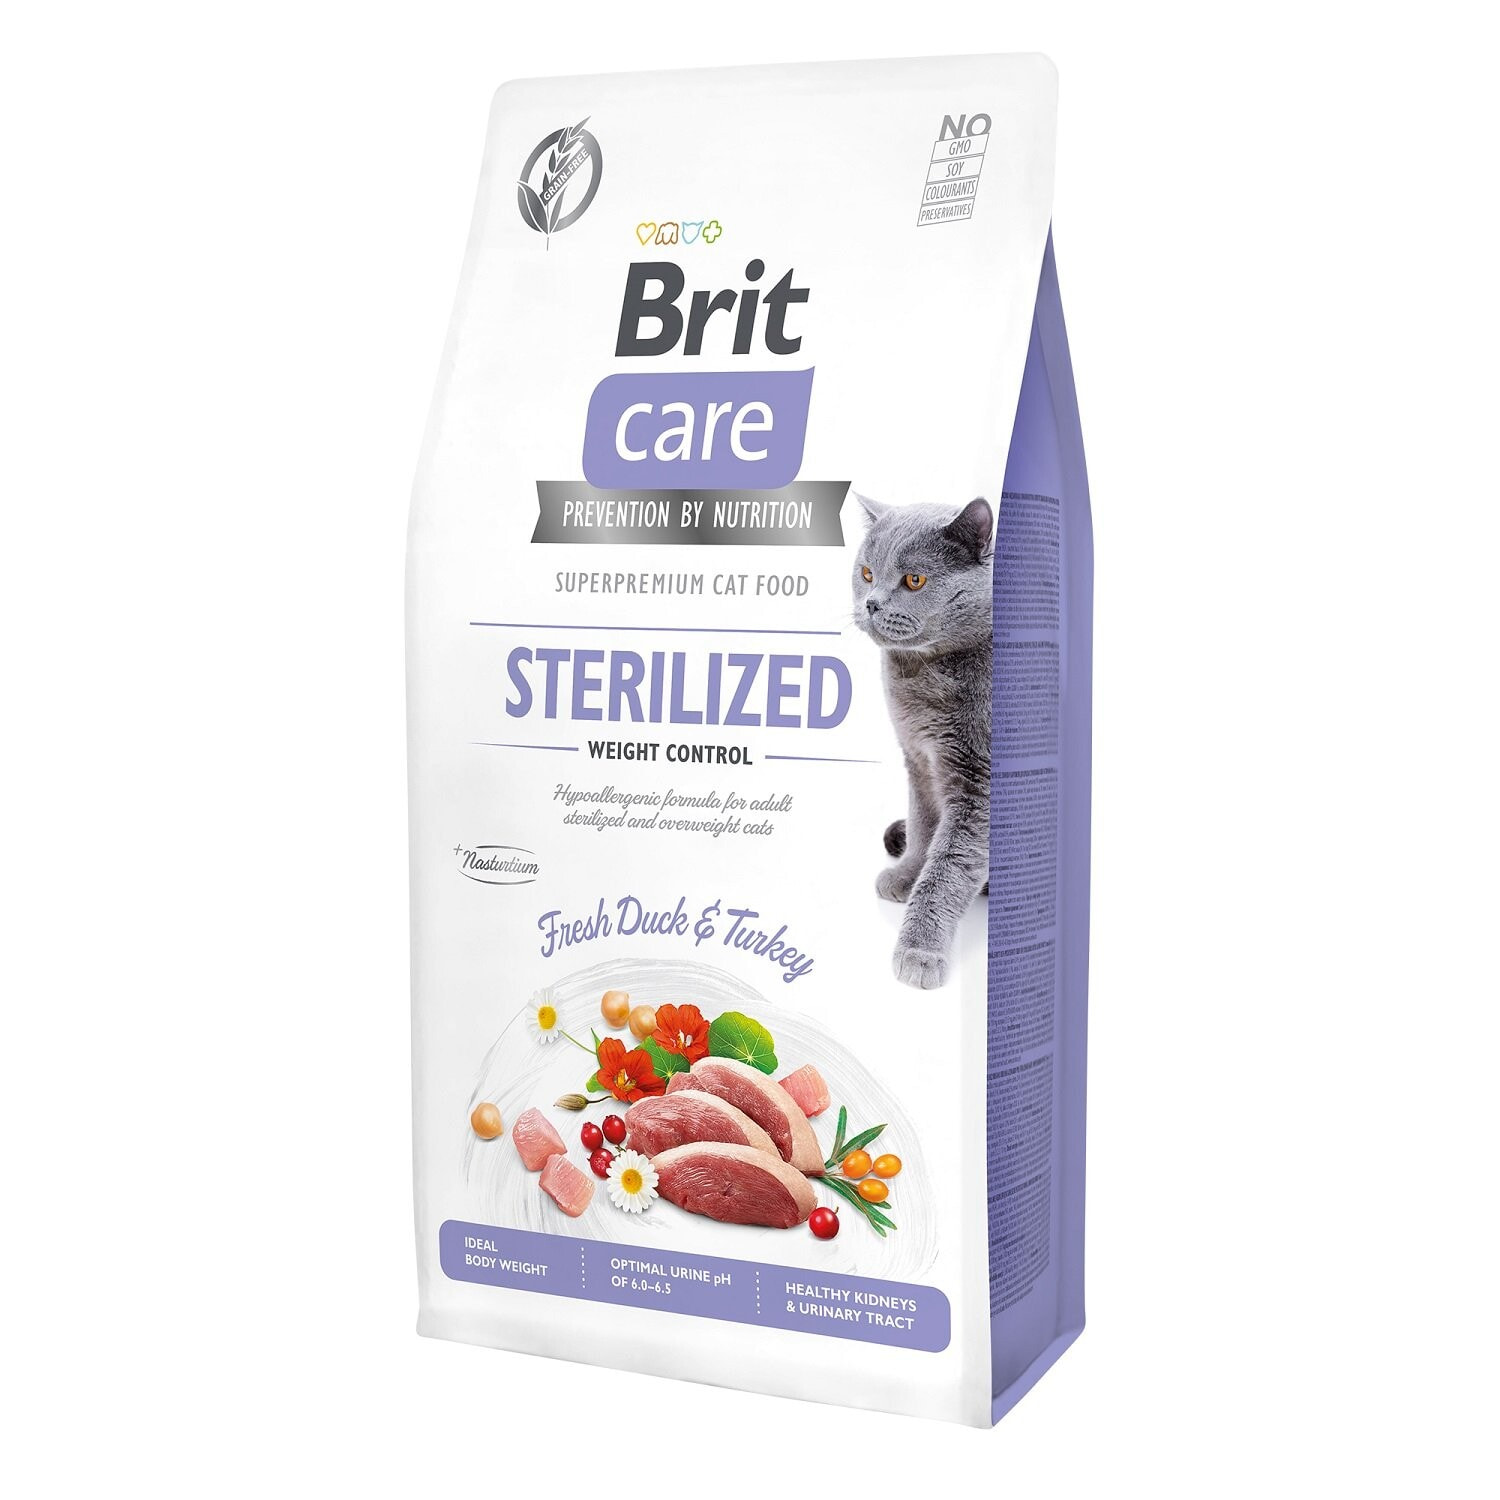 Сухой корм для кошек VAFO PRAHS, Brit Care, для стерилизованных, с уткой, 0.4 кг